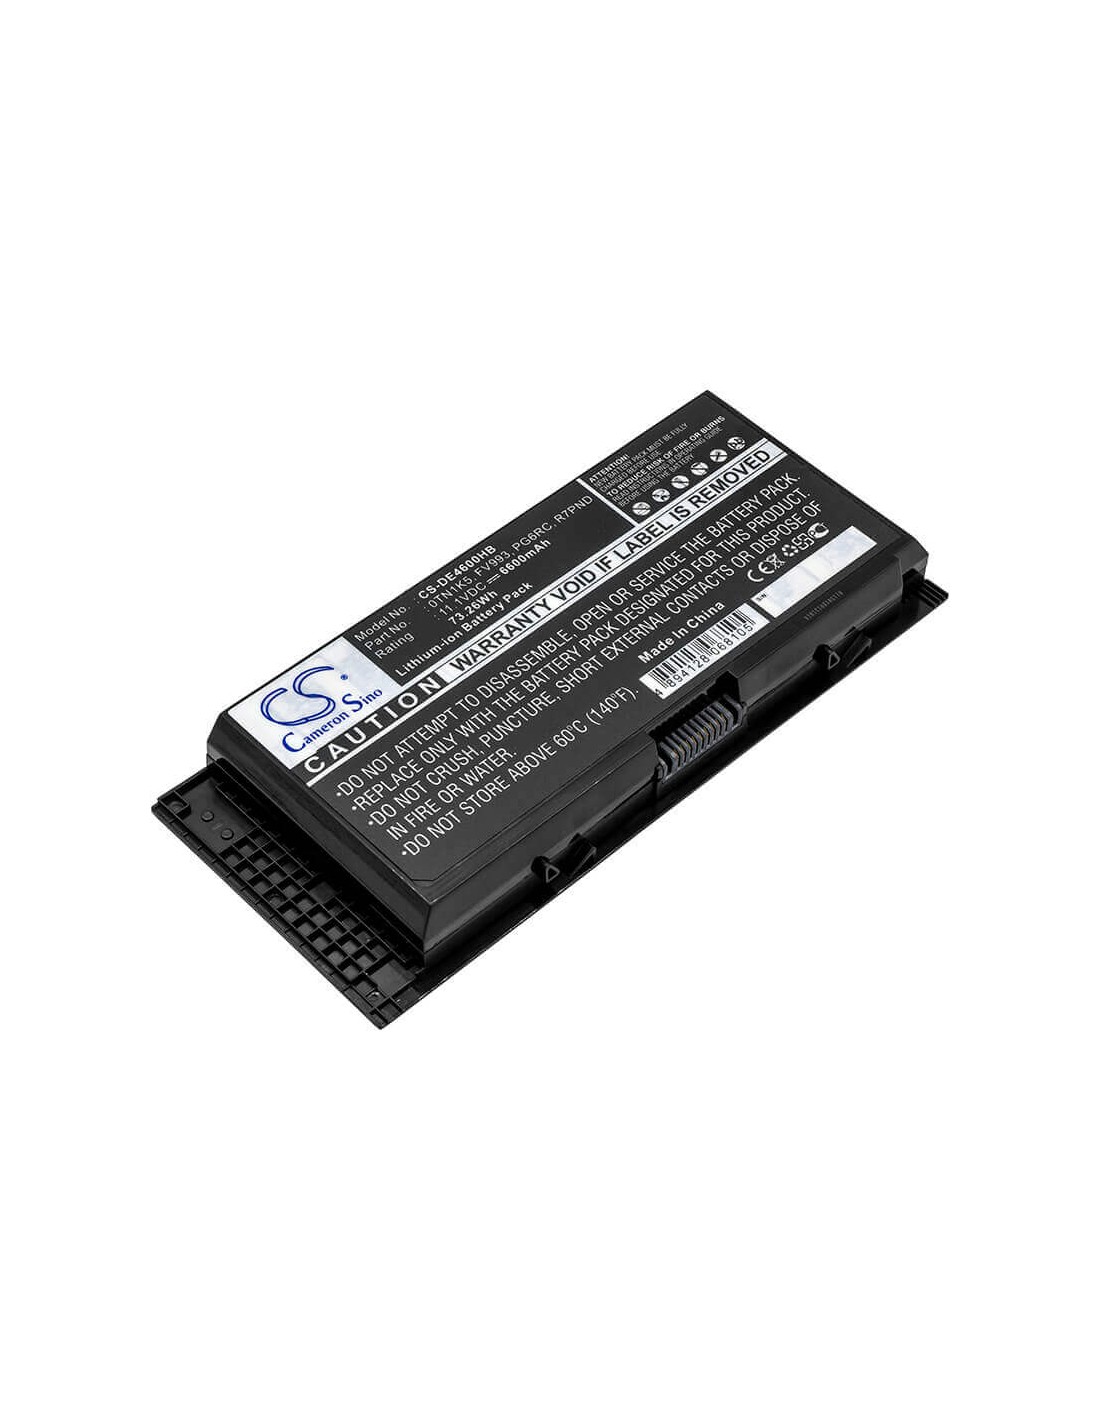 Black Battery for Dell Precision M4600, Precision M4700, Precision M6600 11.1V, 6600mAh - 73.26Wh